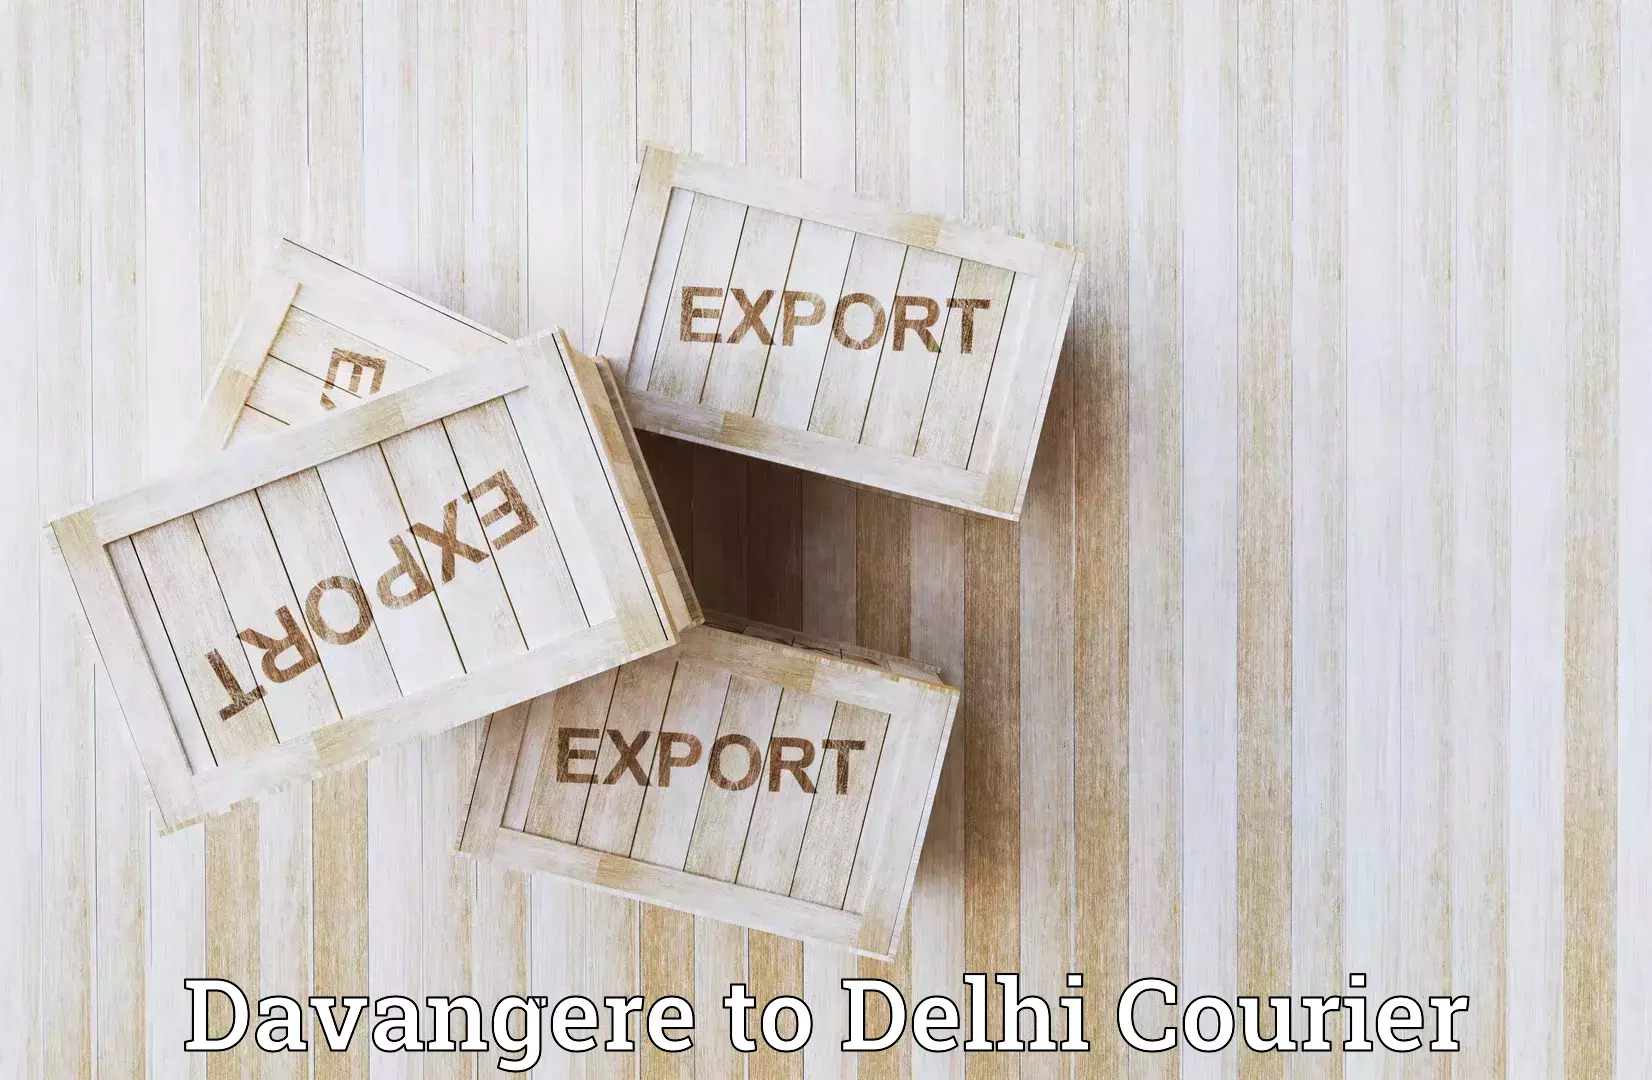 Courier service comparison Davangere to Delhi Technological University DTU